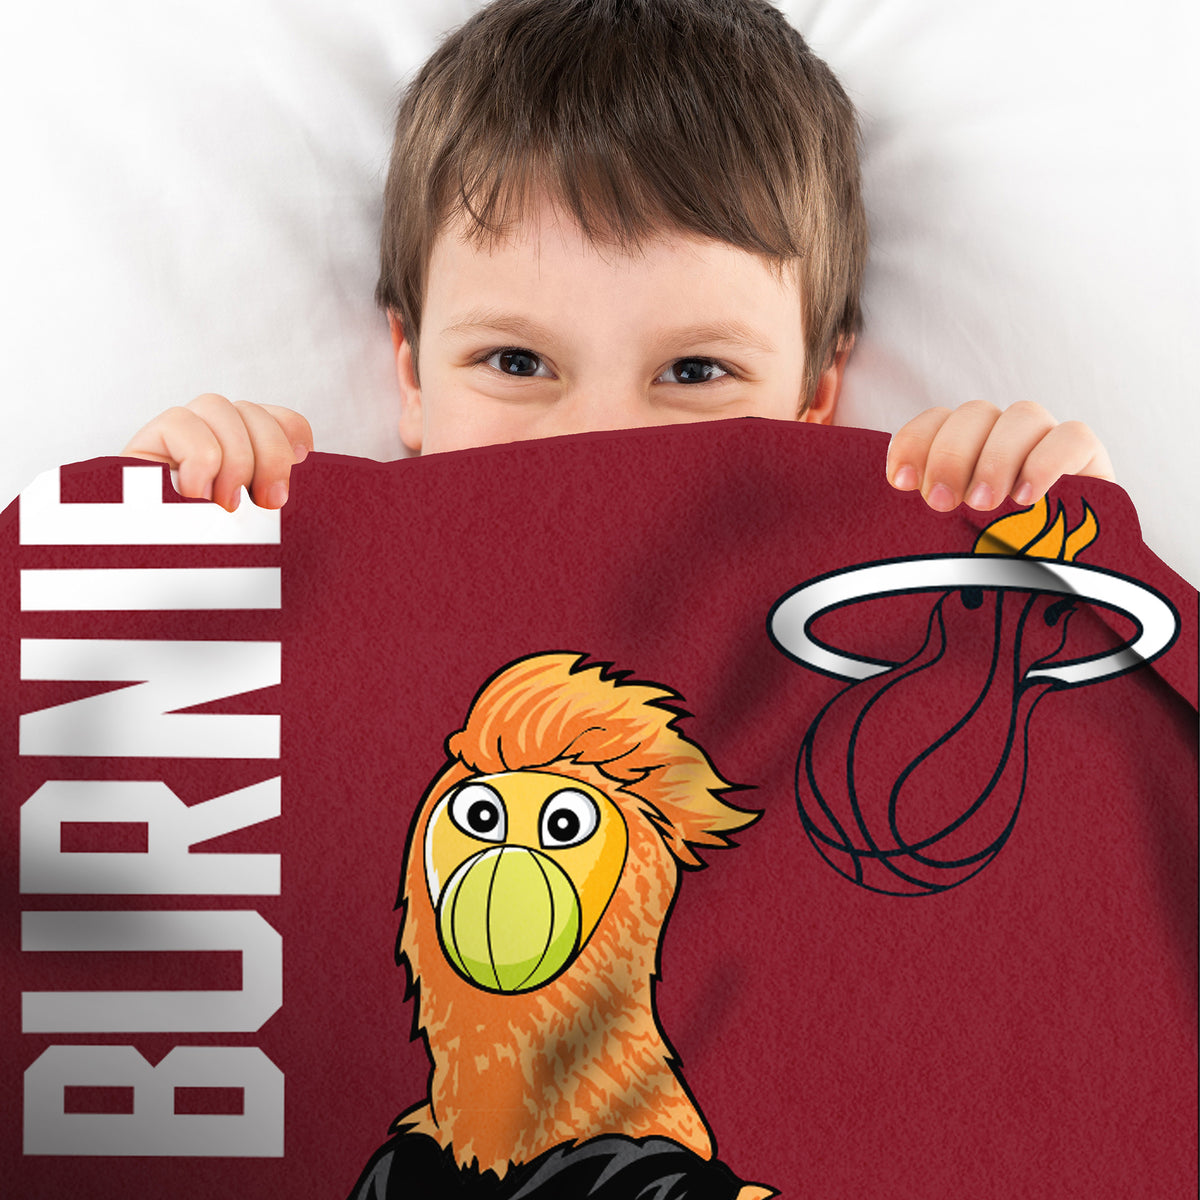 Miami Heat Burnie Mascot 60” x 80” Raschel Plush Blanket